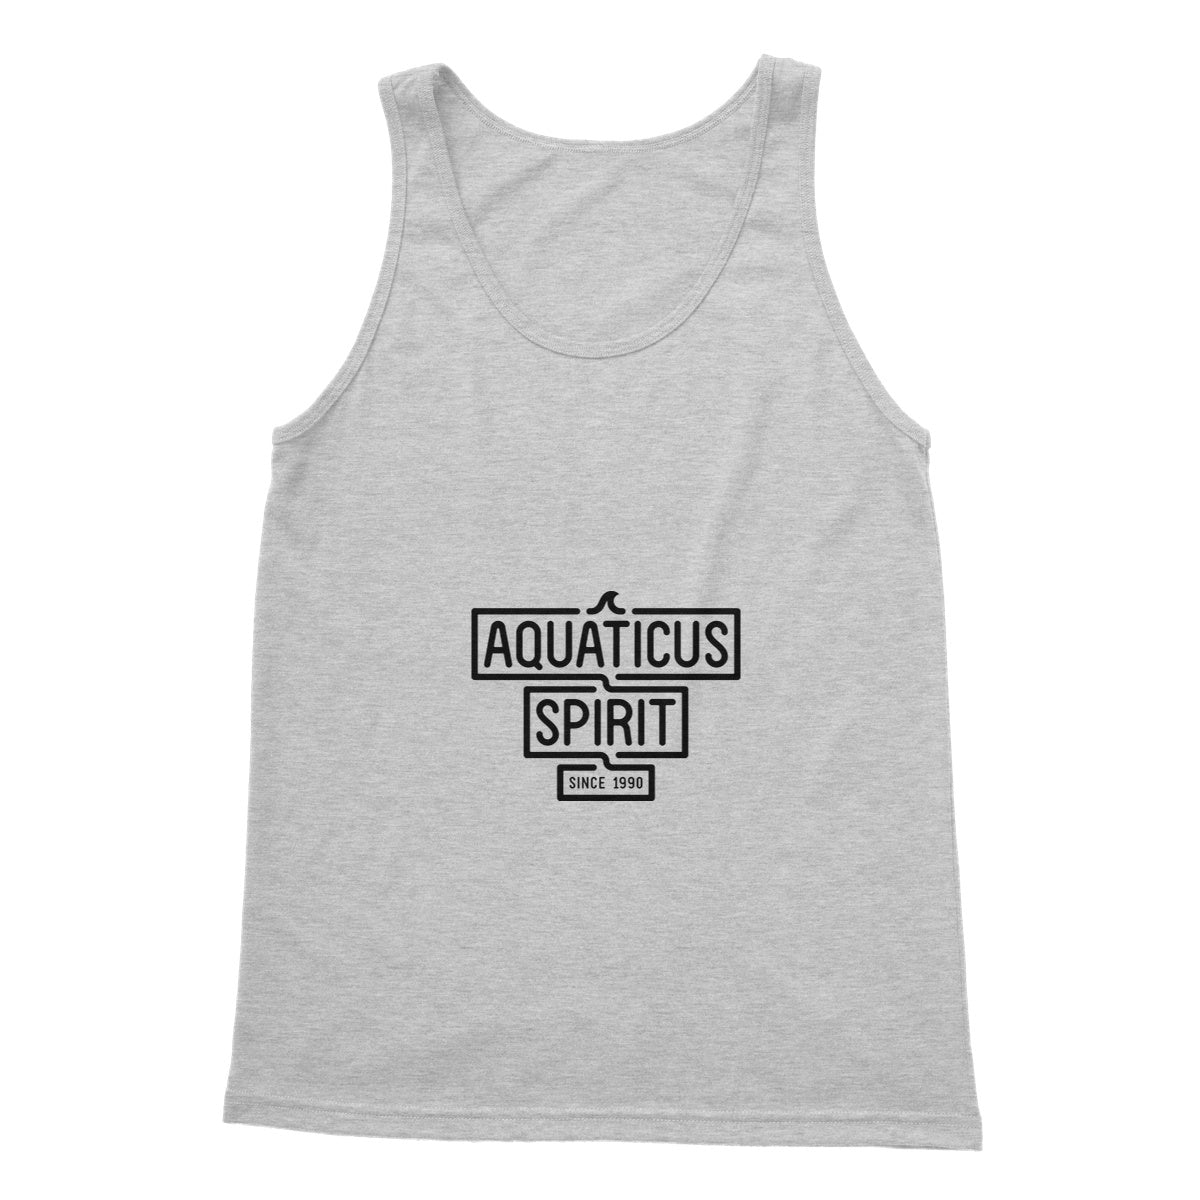 AQUA - 02 - Aquaticus Spirit - Regata Softstyle